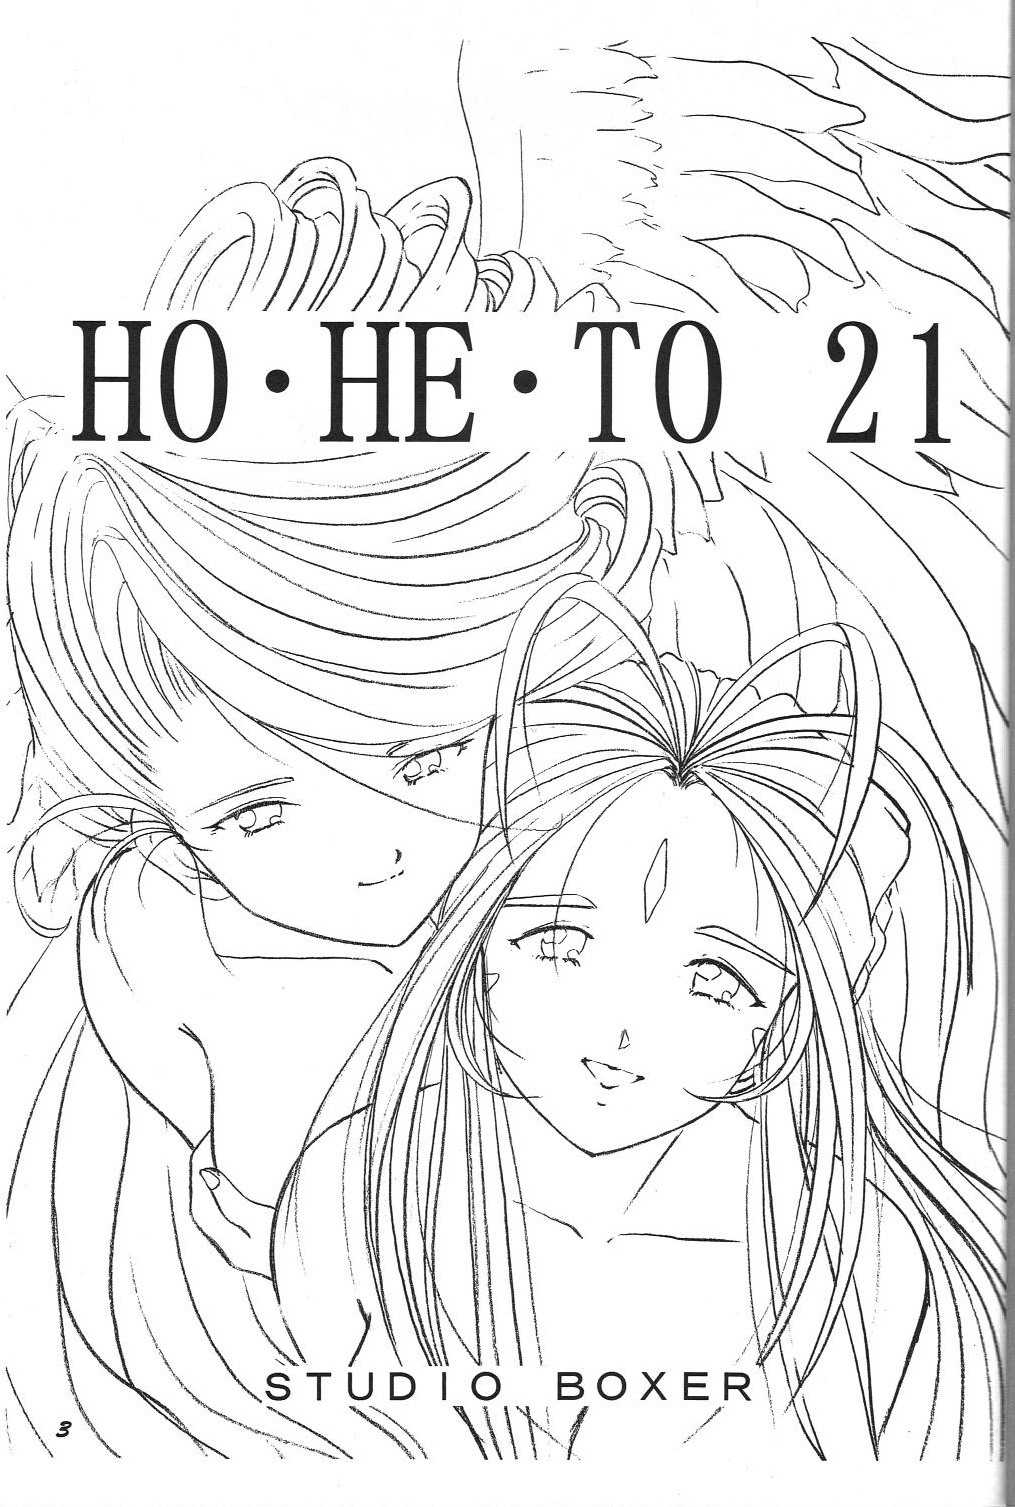 [Studio Boxer (Shima Takashi, Taka)] HOHETO 21 (Oh my goddess!) [スタジオぼくさぁ (嶌隆, 貴)] HOHETO 21 (ああっ女神さまっ)